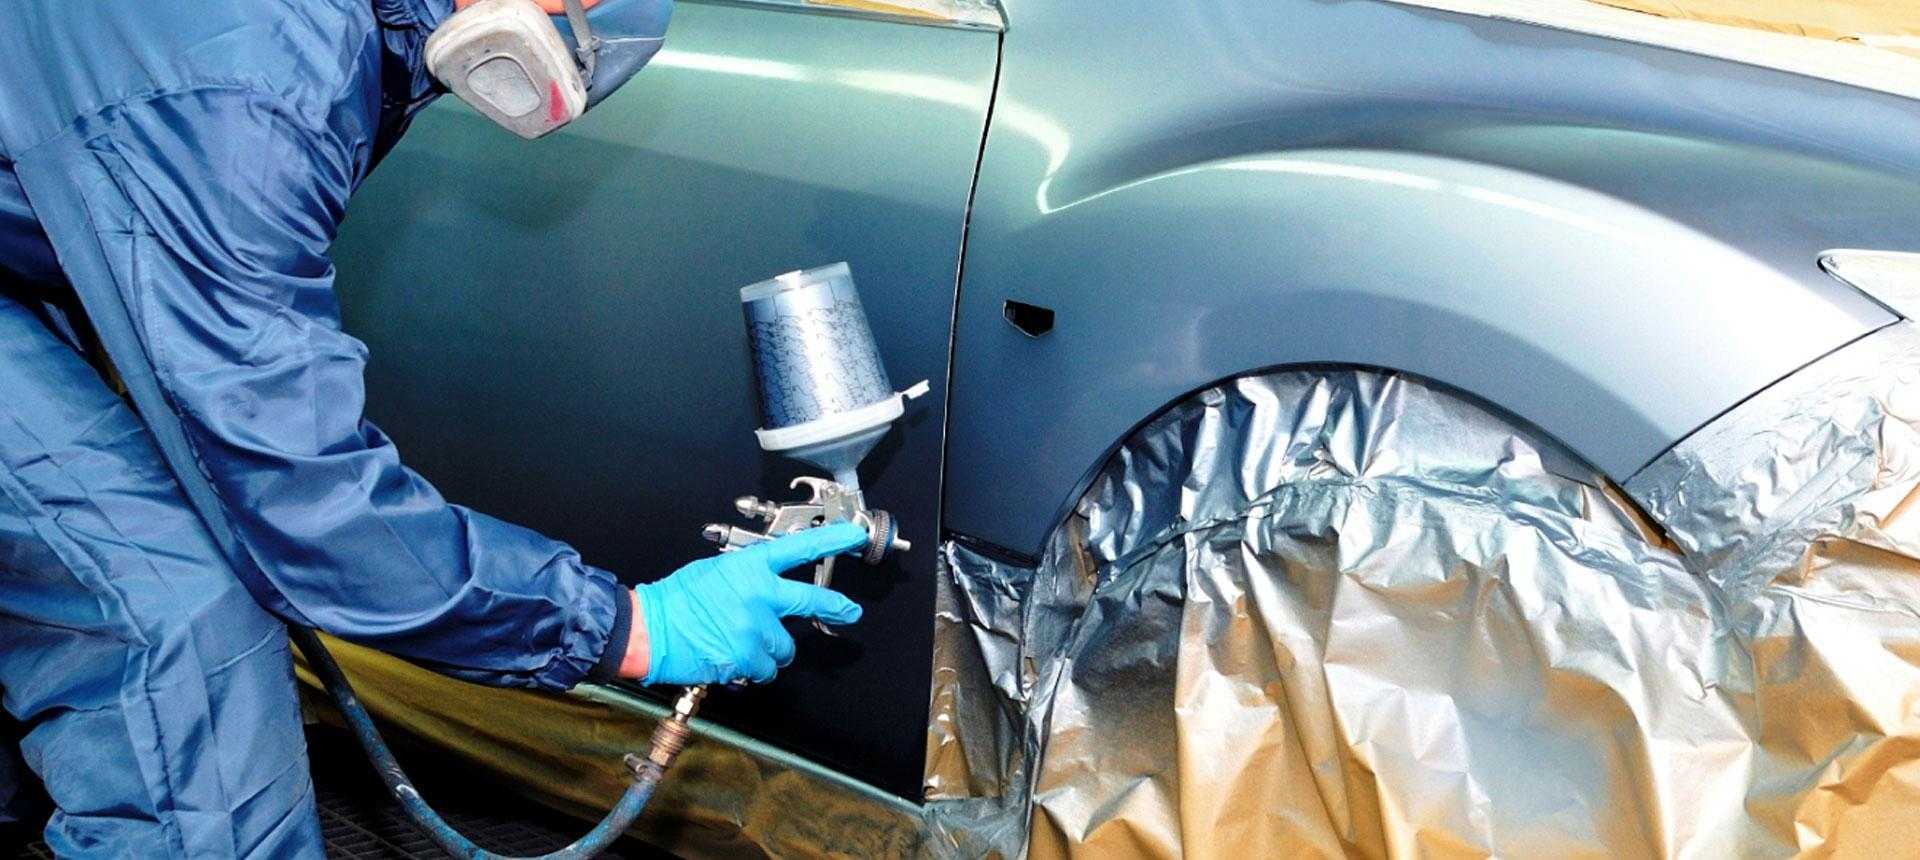 Виды и новые технологии ремонта кузова автомобиля - методы, как делают кузовной ремонт